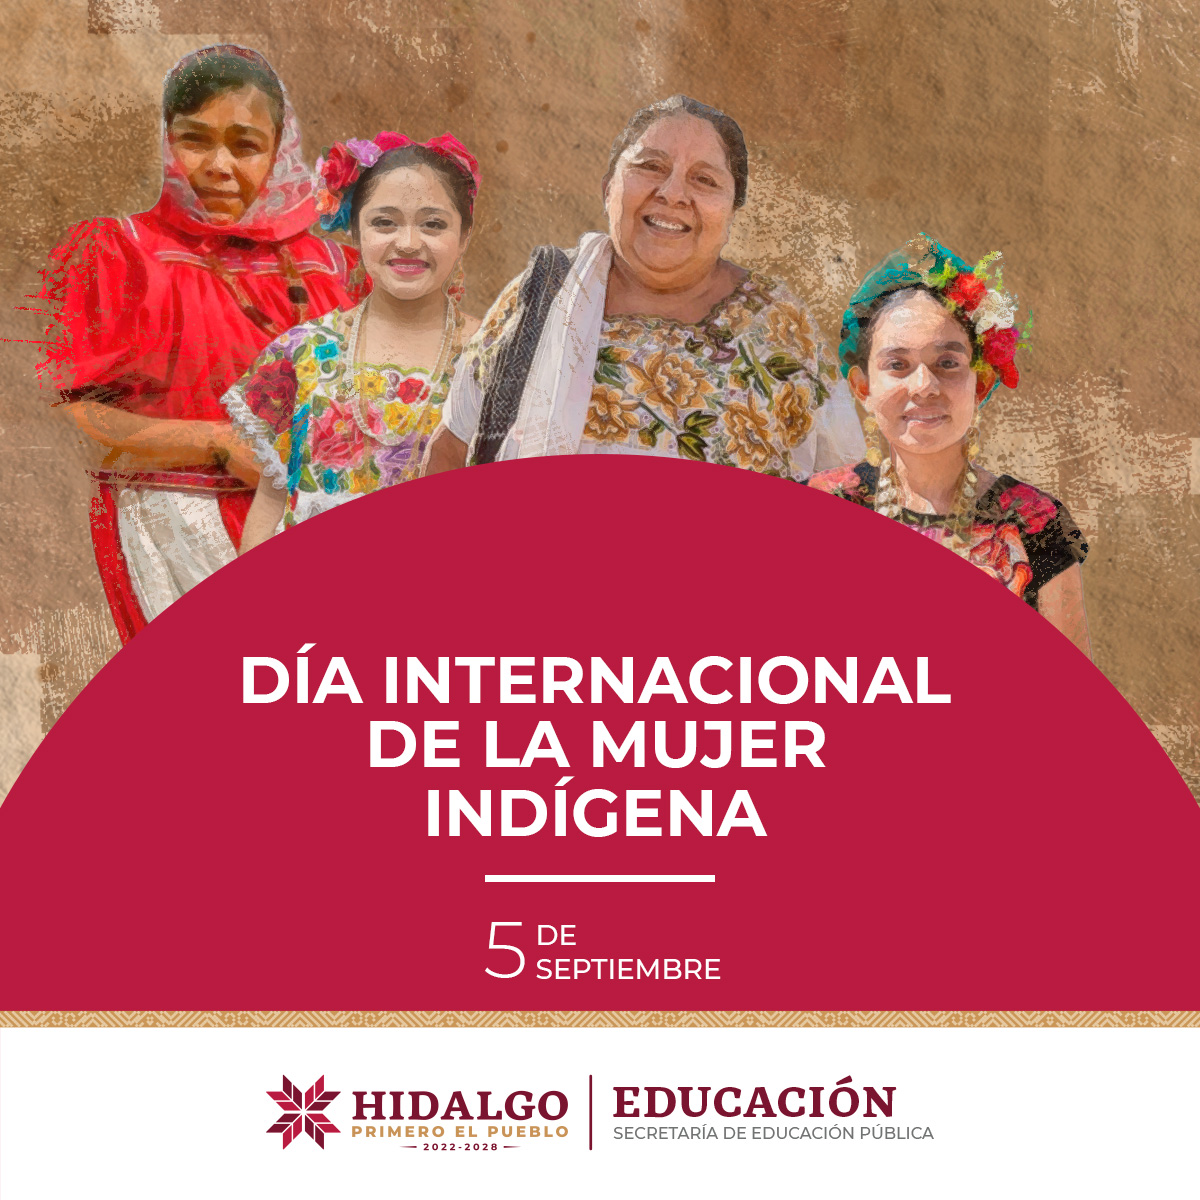 En el #DíaInternacionalDeLaMujerIndígena, se rinde homenaje a las mujeres pertenecientes a pueblos y comunidades indígenas de todo el mundo, reconociendo su invaluable contribución a la preservación de sus culturas y conocimientos.
#PrimeroLaEducación